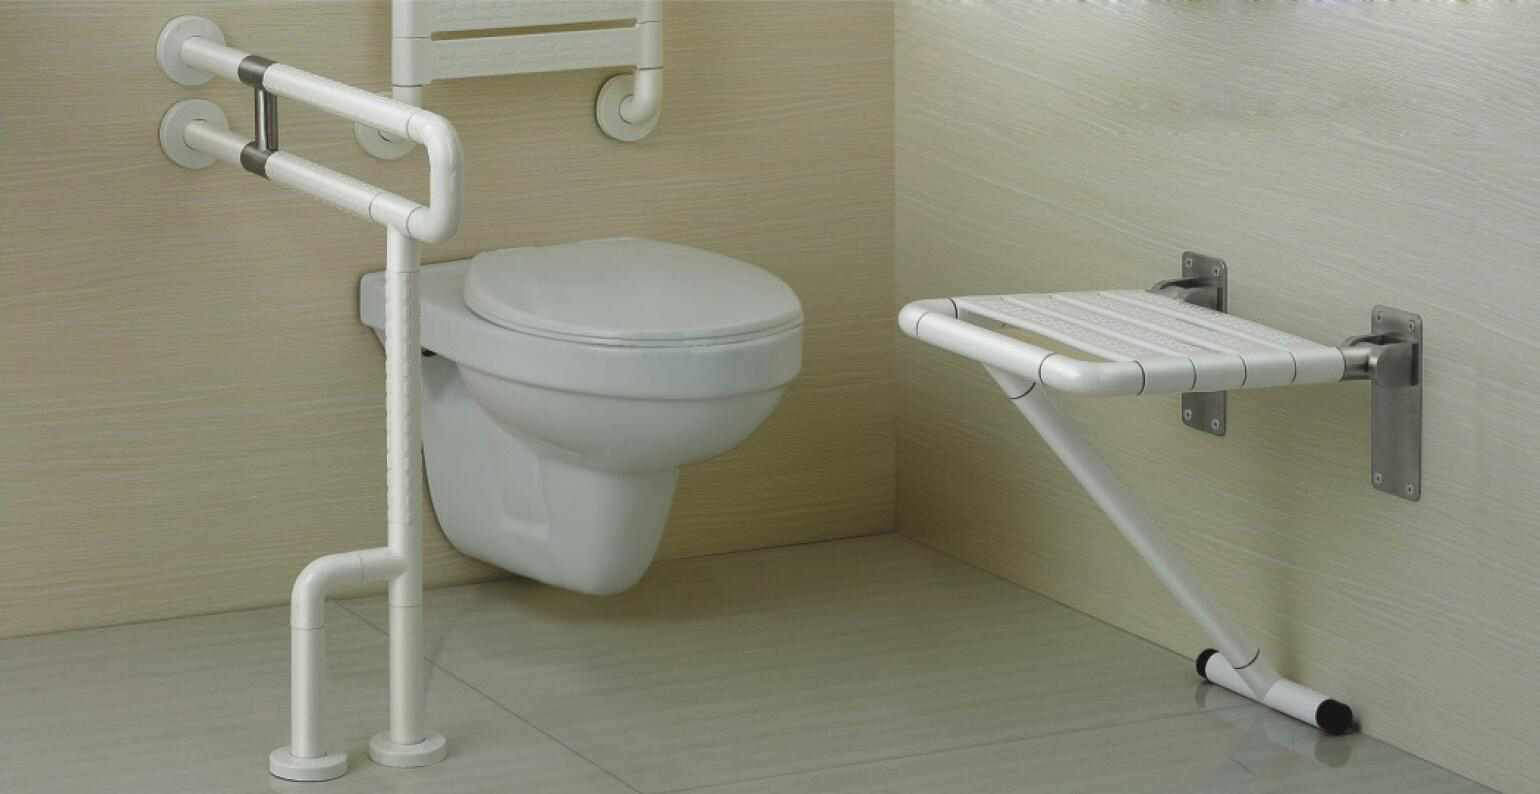 벽걸이형 화장실이 인기를 끄는 이유는 무엇인가요?